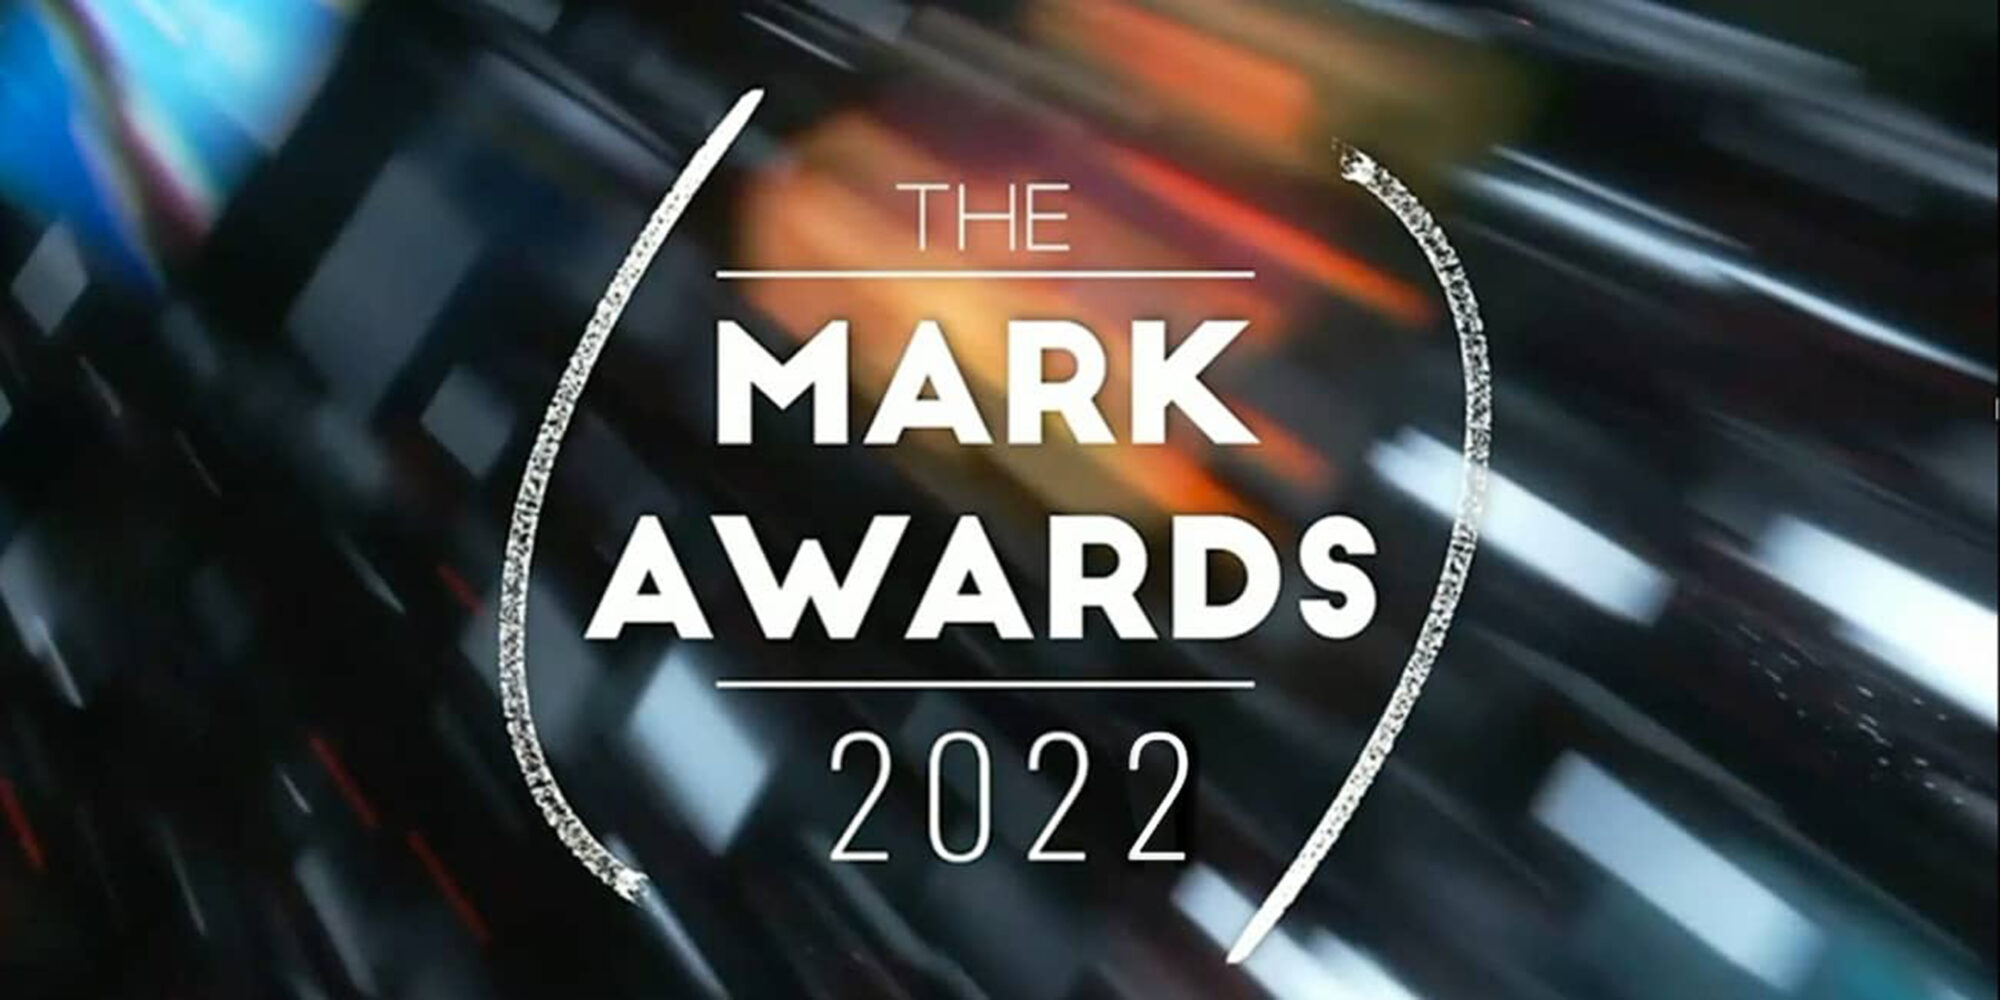 Mark Awards 2022